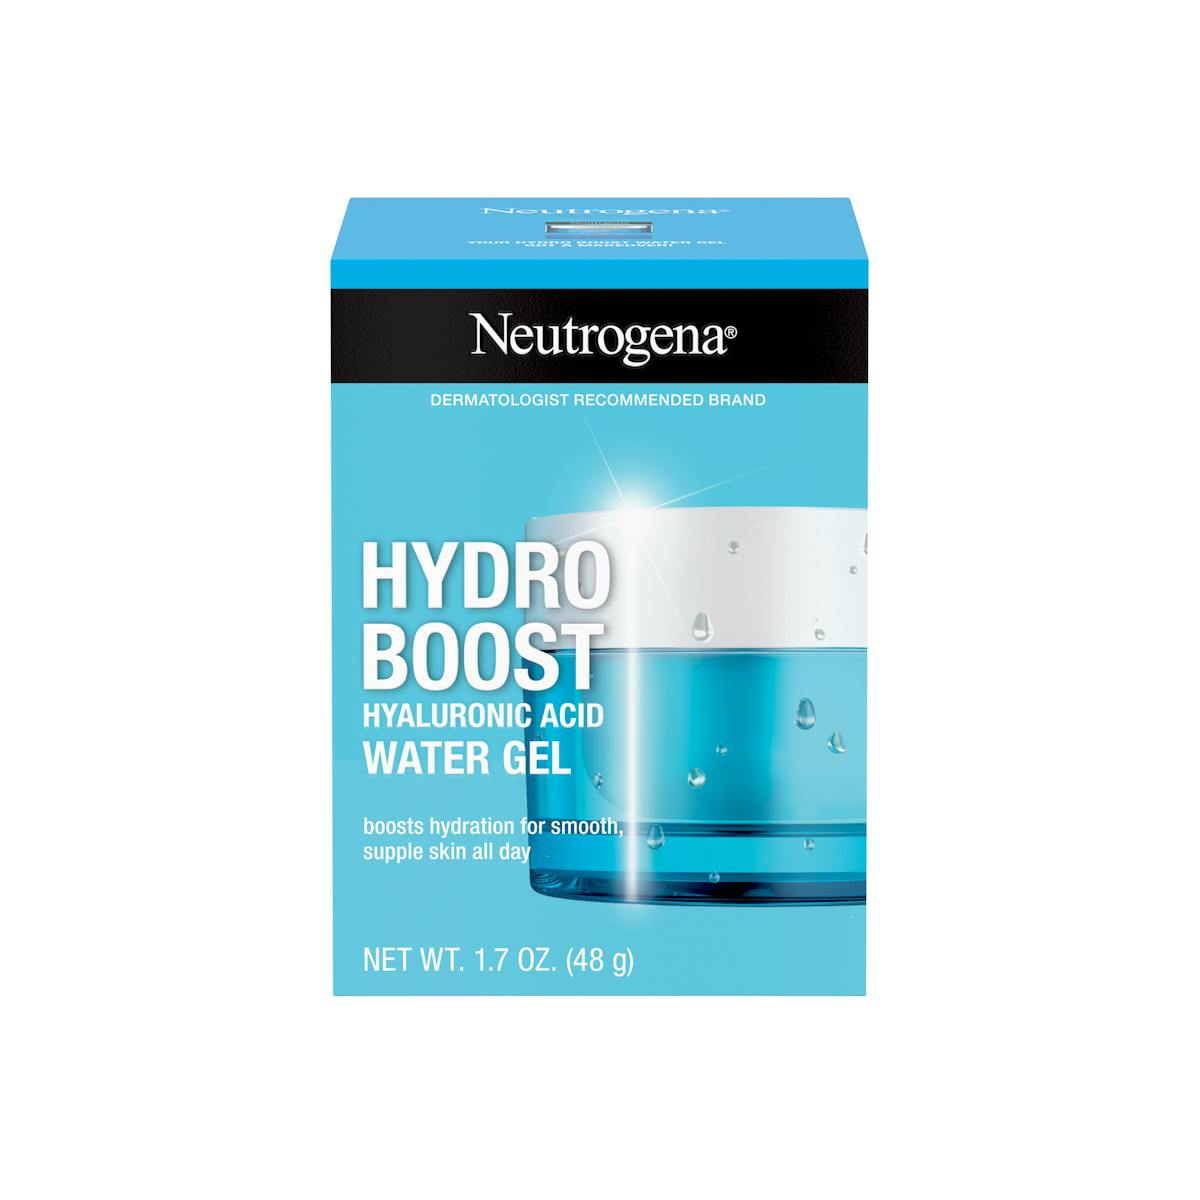 Hydro Boost Water Gel & Oil-Free Face Moisturizer